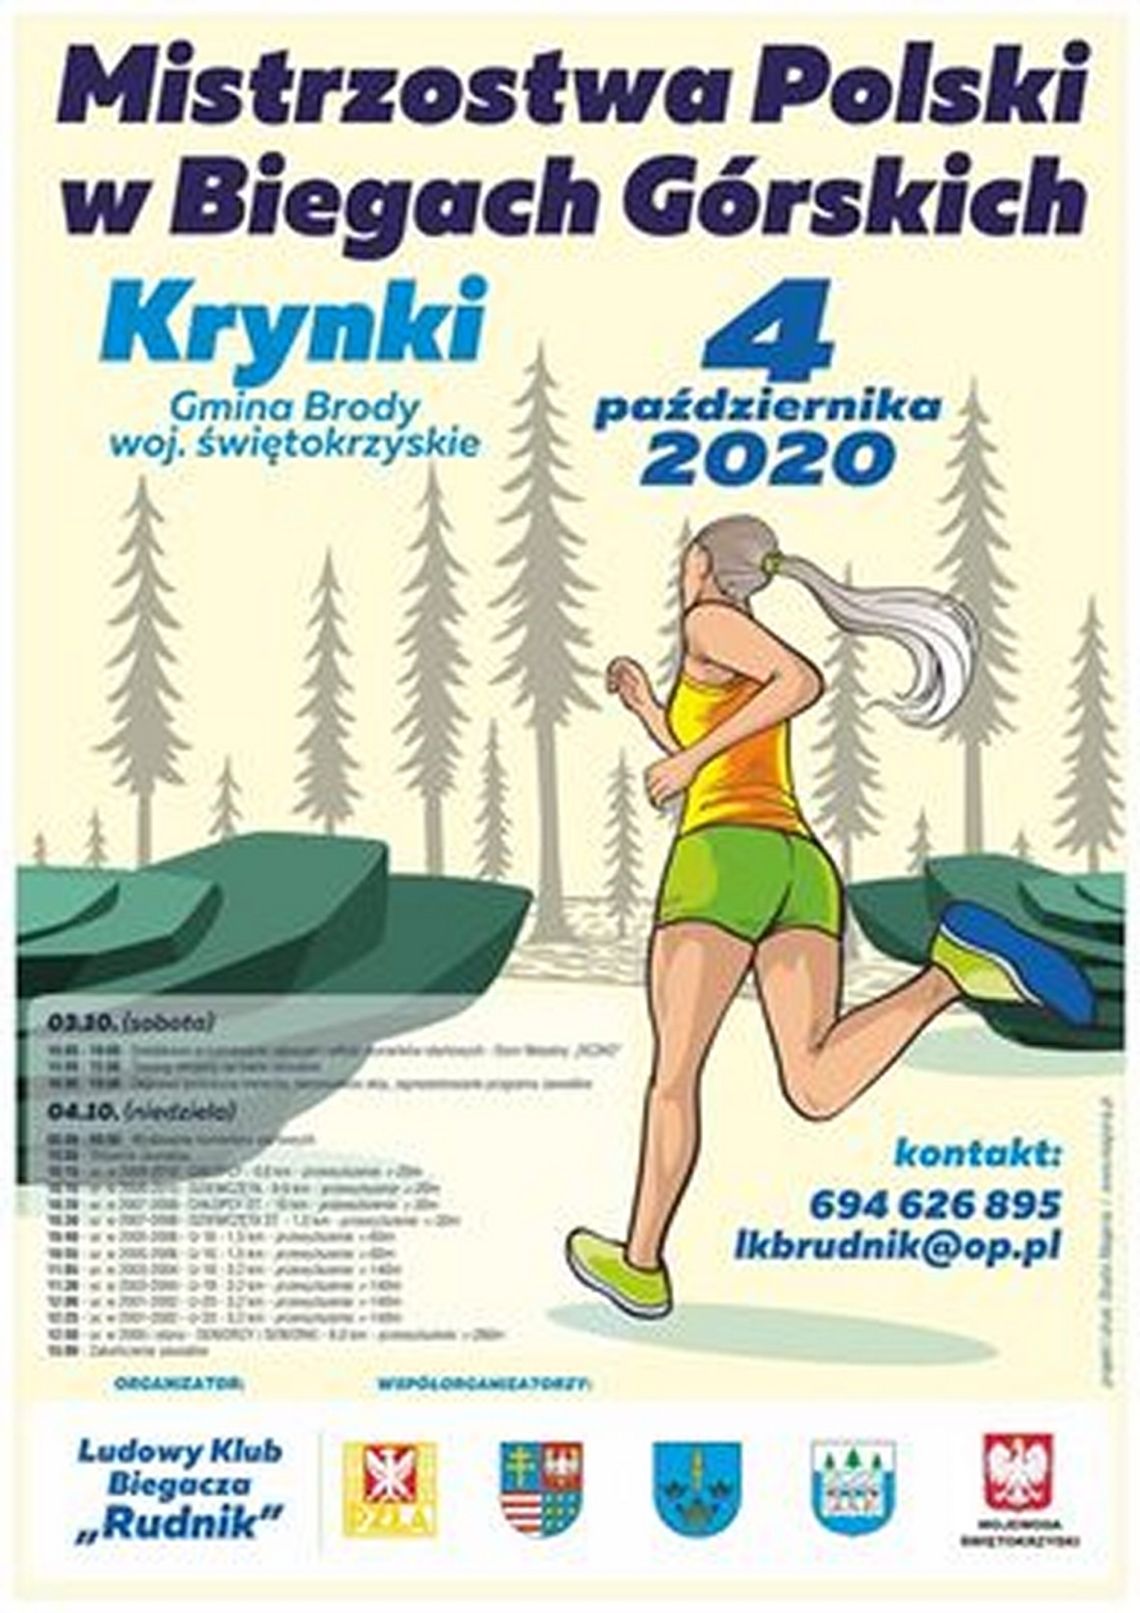 Mistrzostwa Polski w biegach górskich